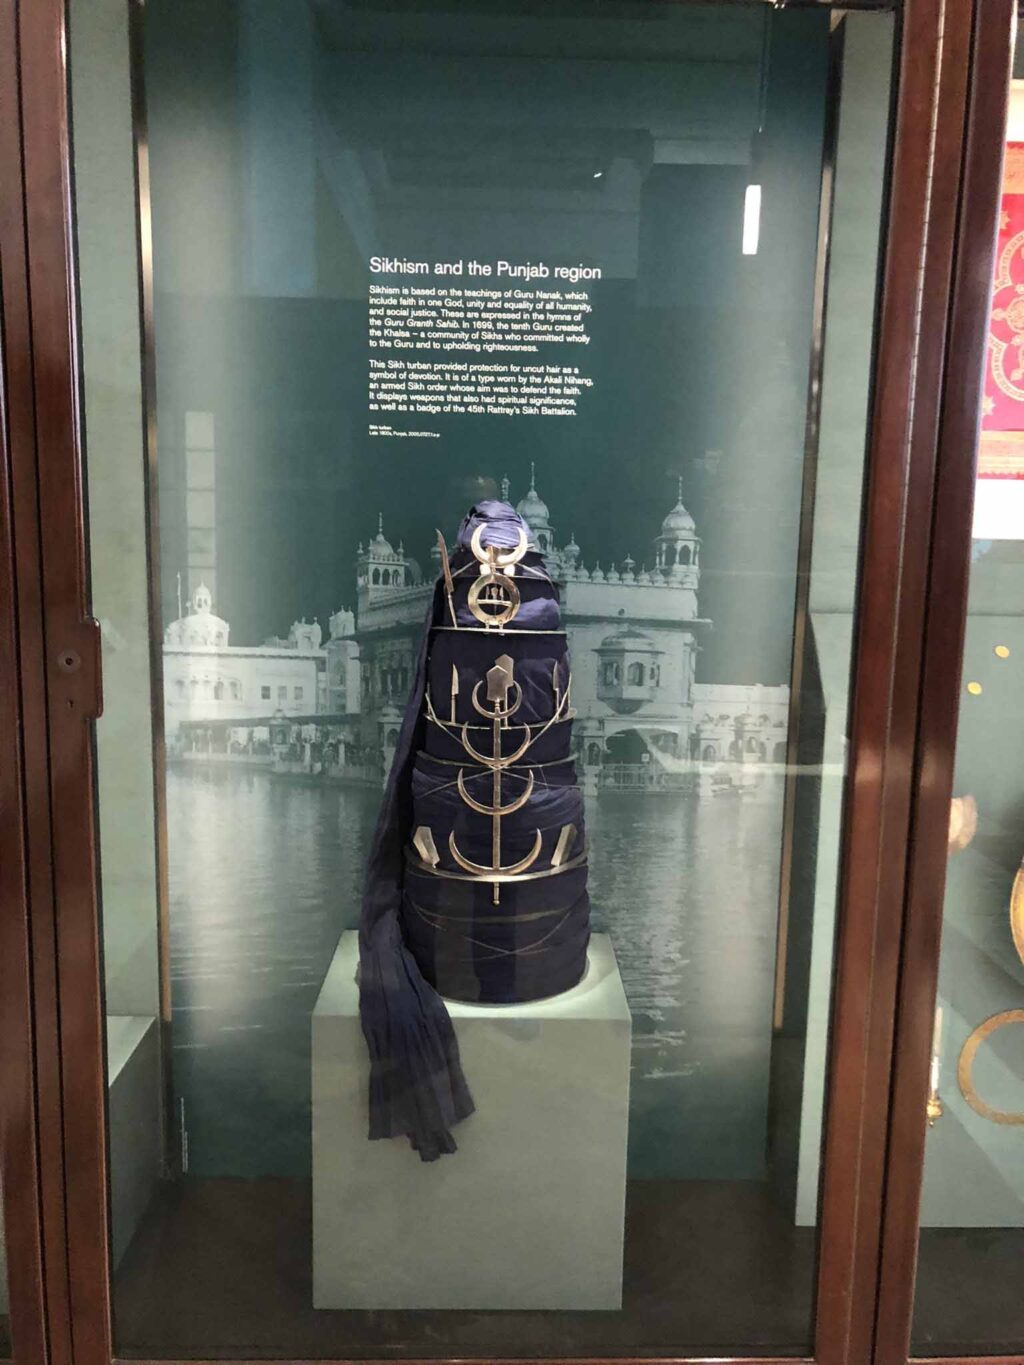 New exhibition: लंदन में महाराजा रणजीति सिंह की जिंदगी और विरासत पर नयी प्रदर्शनी